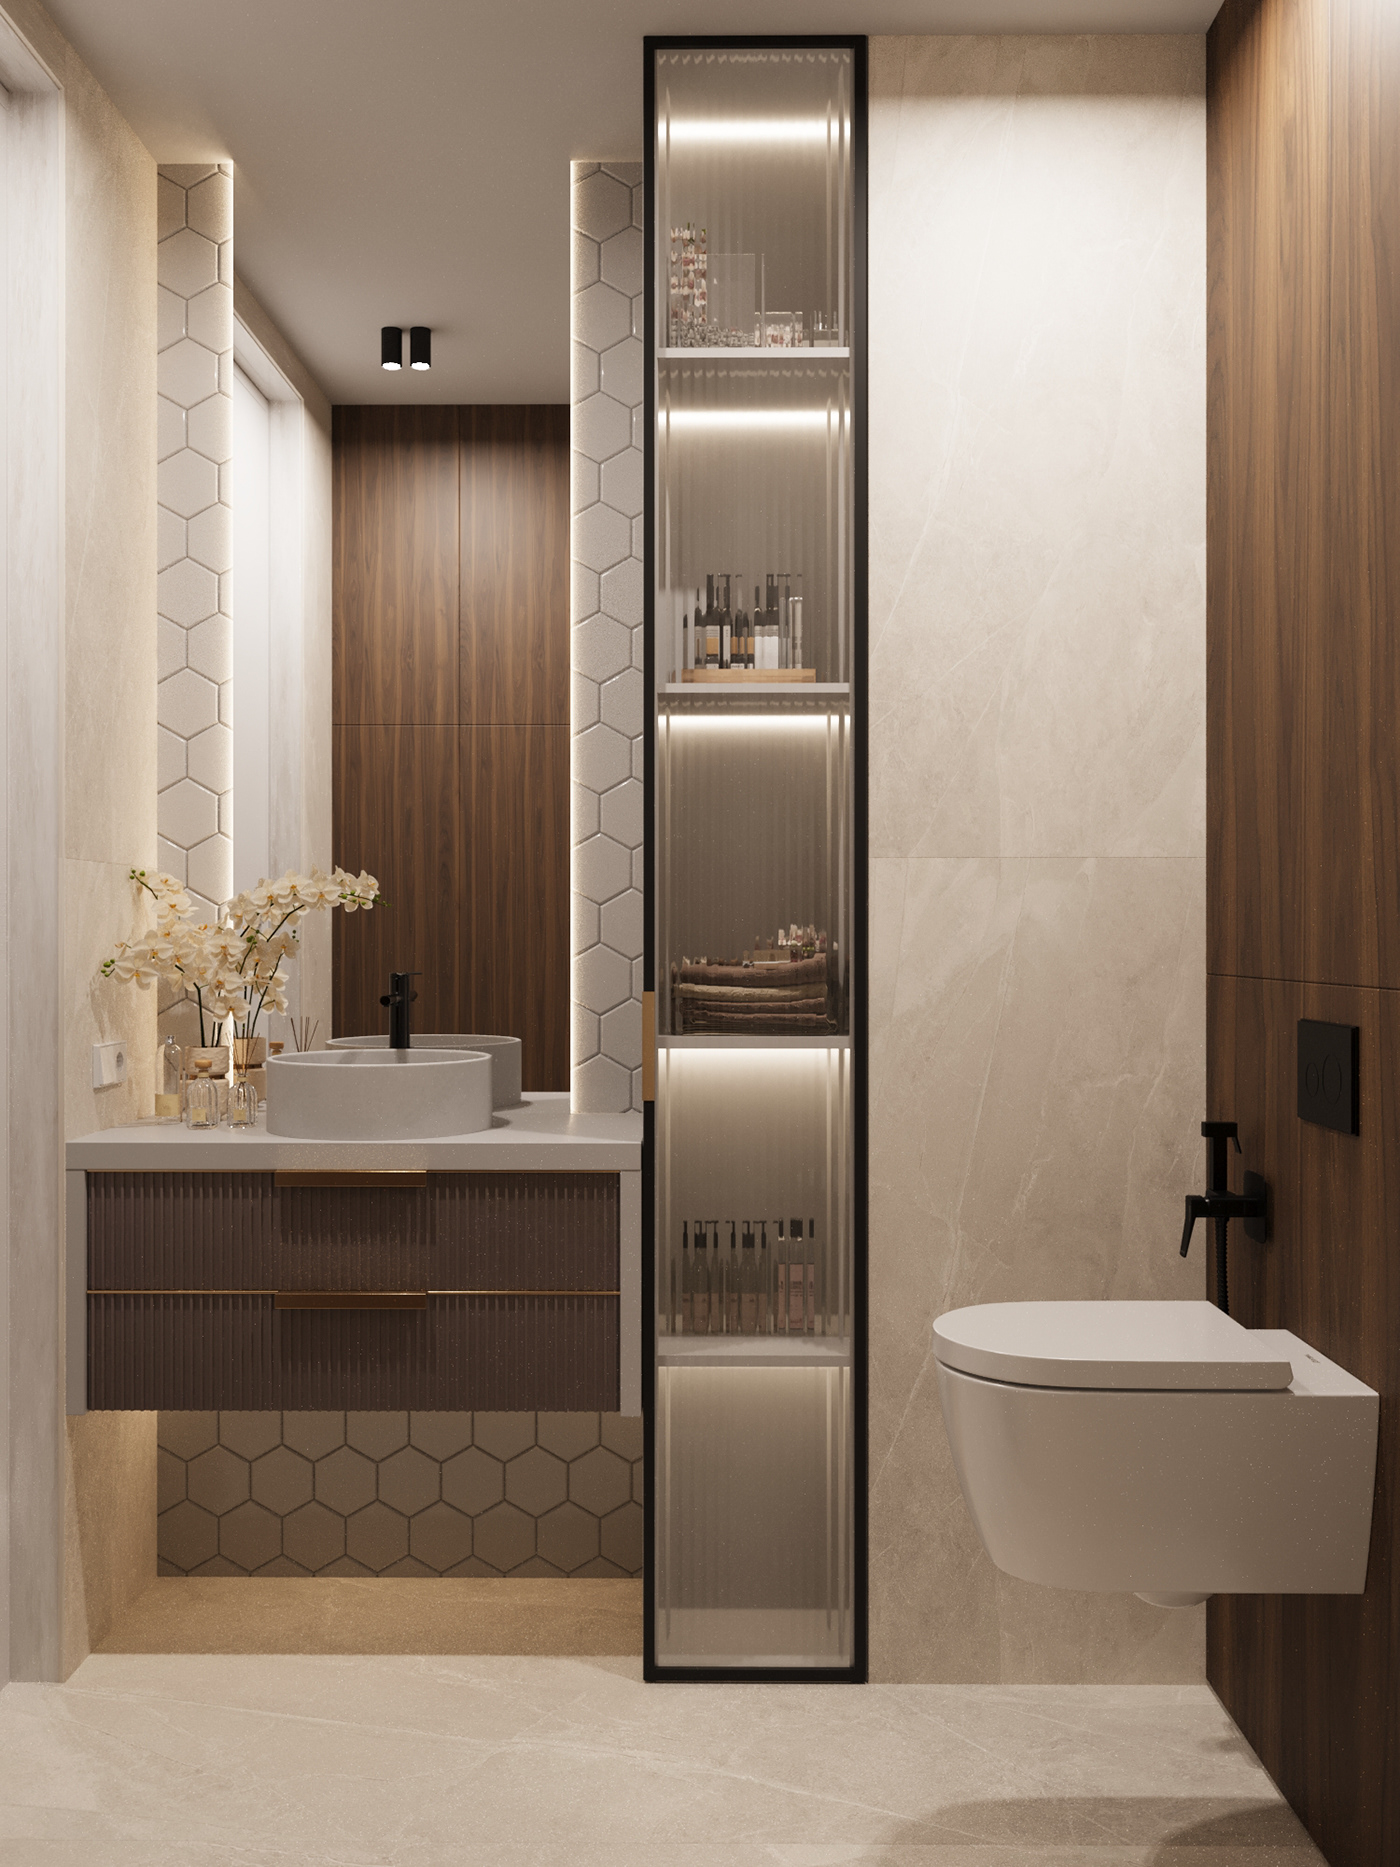 bathroom interior design  Render visualization 3ds max architecture corona